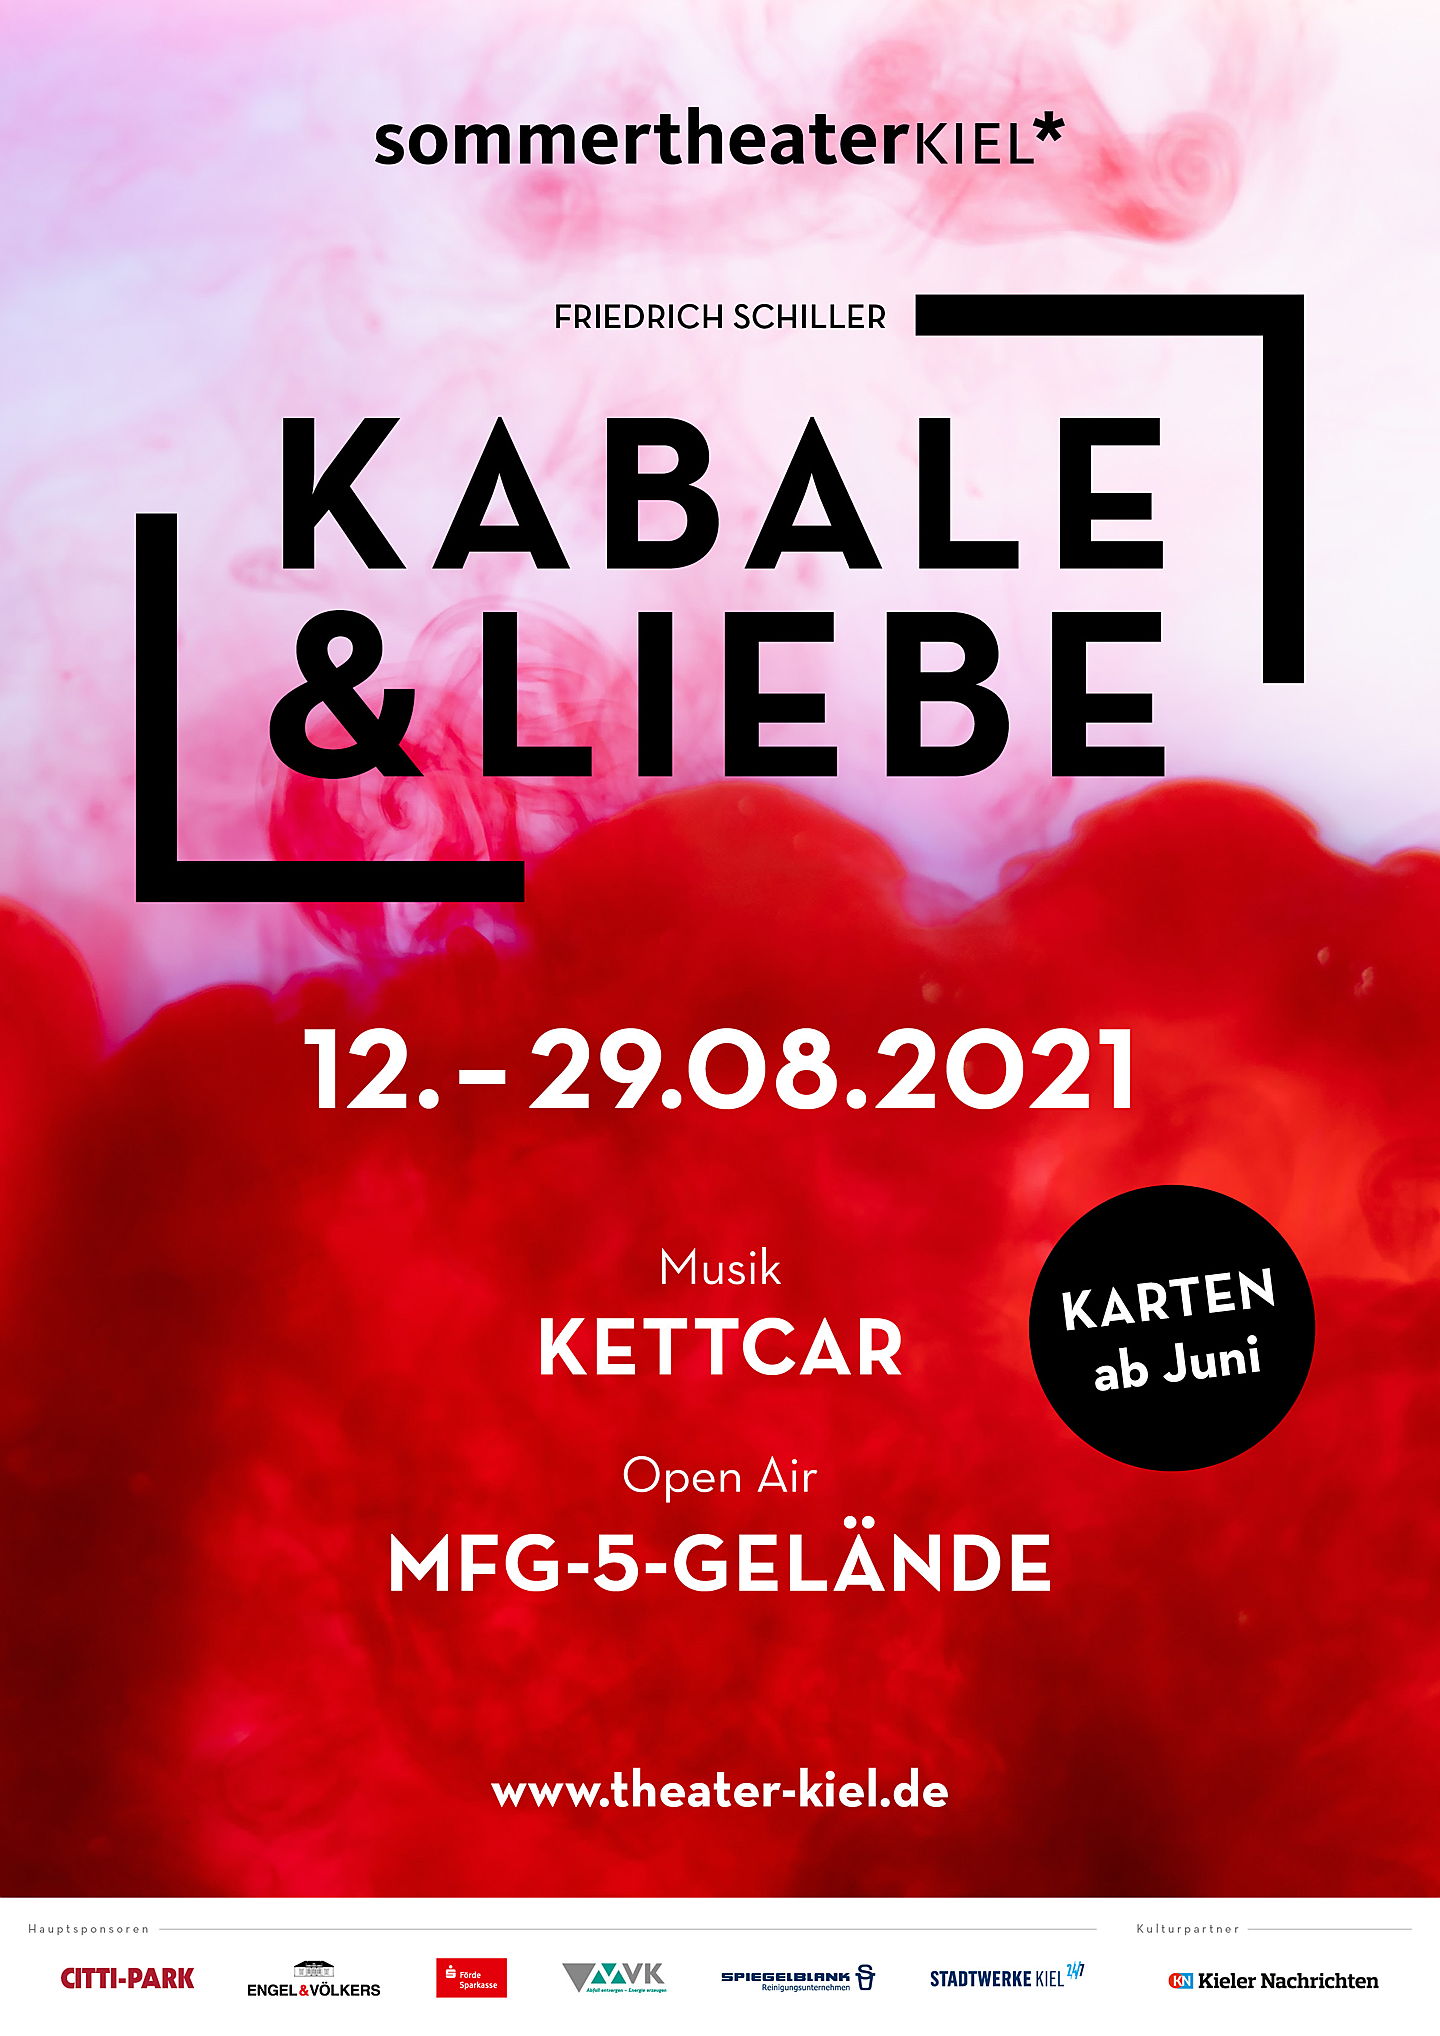  Ratzeburg
- Engel & Völkers Schleswig-Holstein, Sponsor des Sommertheaters in Kiel - Kabale & Liebe von Friedrich Schiller wird vom 12.-29.08.2021 im Freilufttheater spielen.